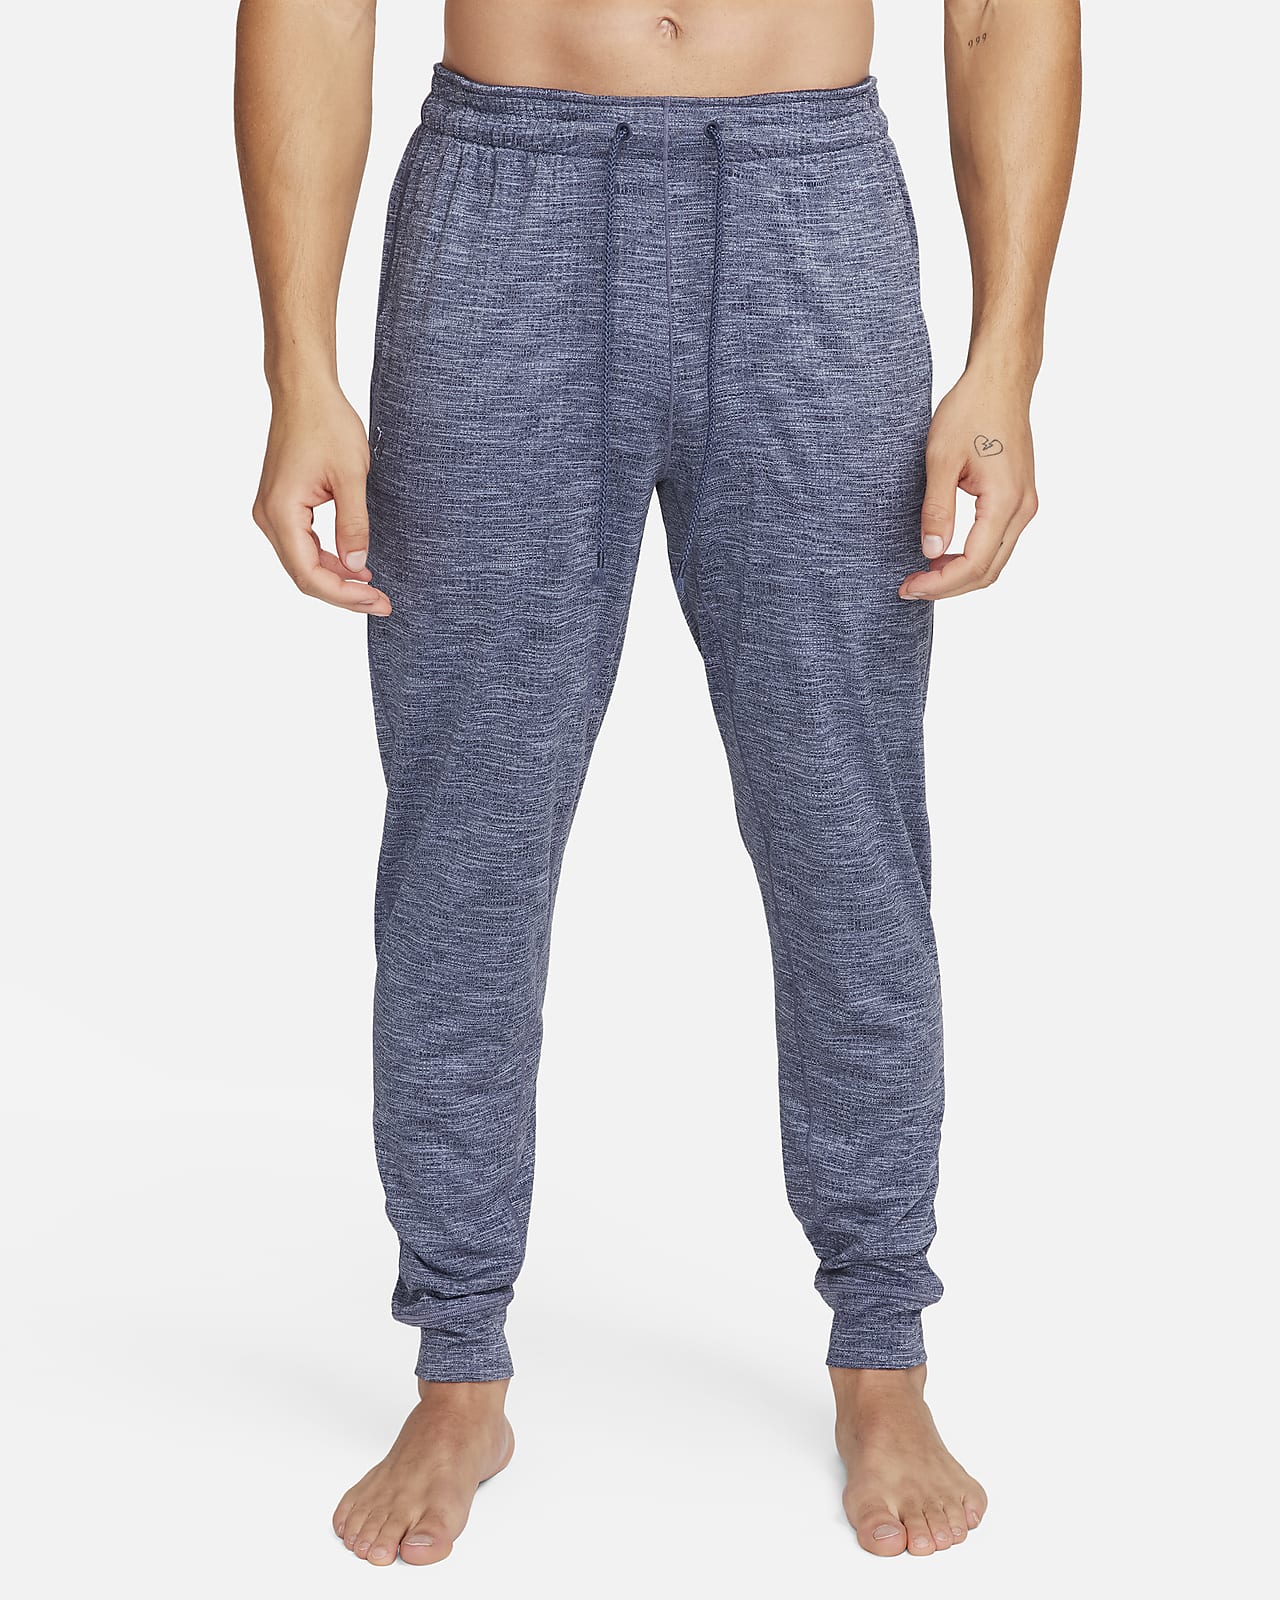 Men's Yoga Pants & Trousers. Nike UK